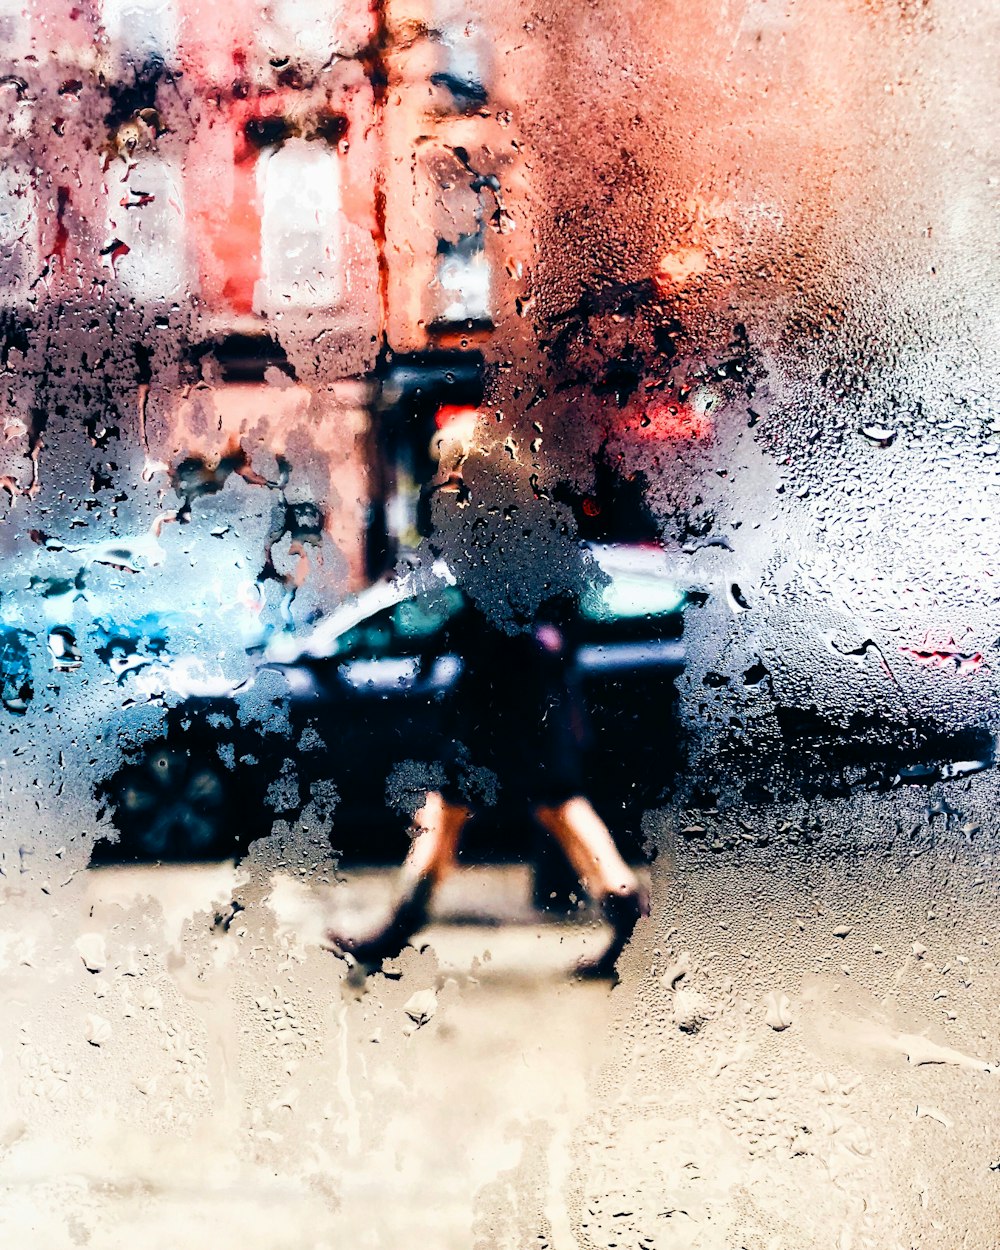 빗속을 걷는 사람의 흐릿한 사진